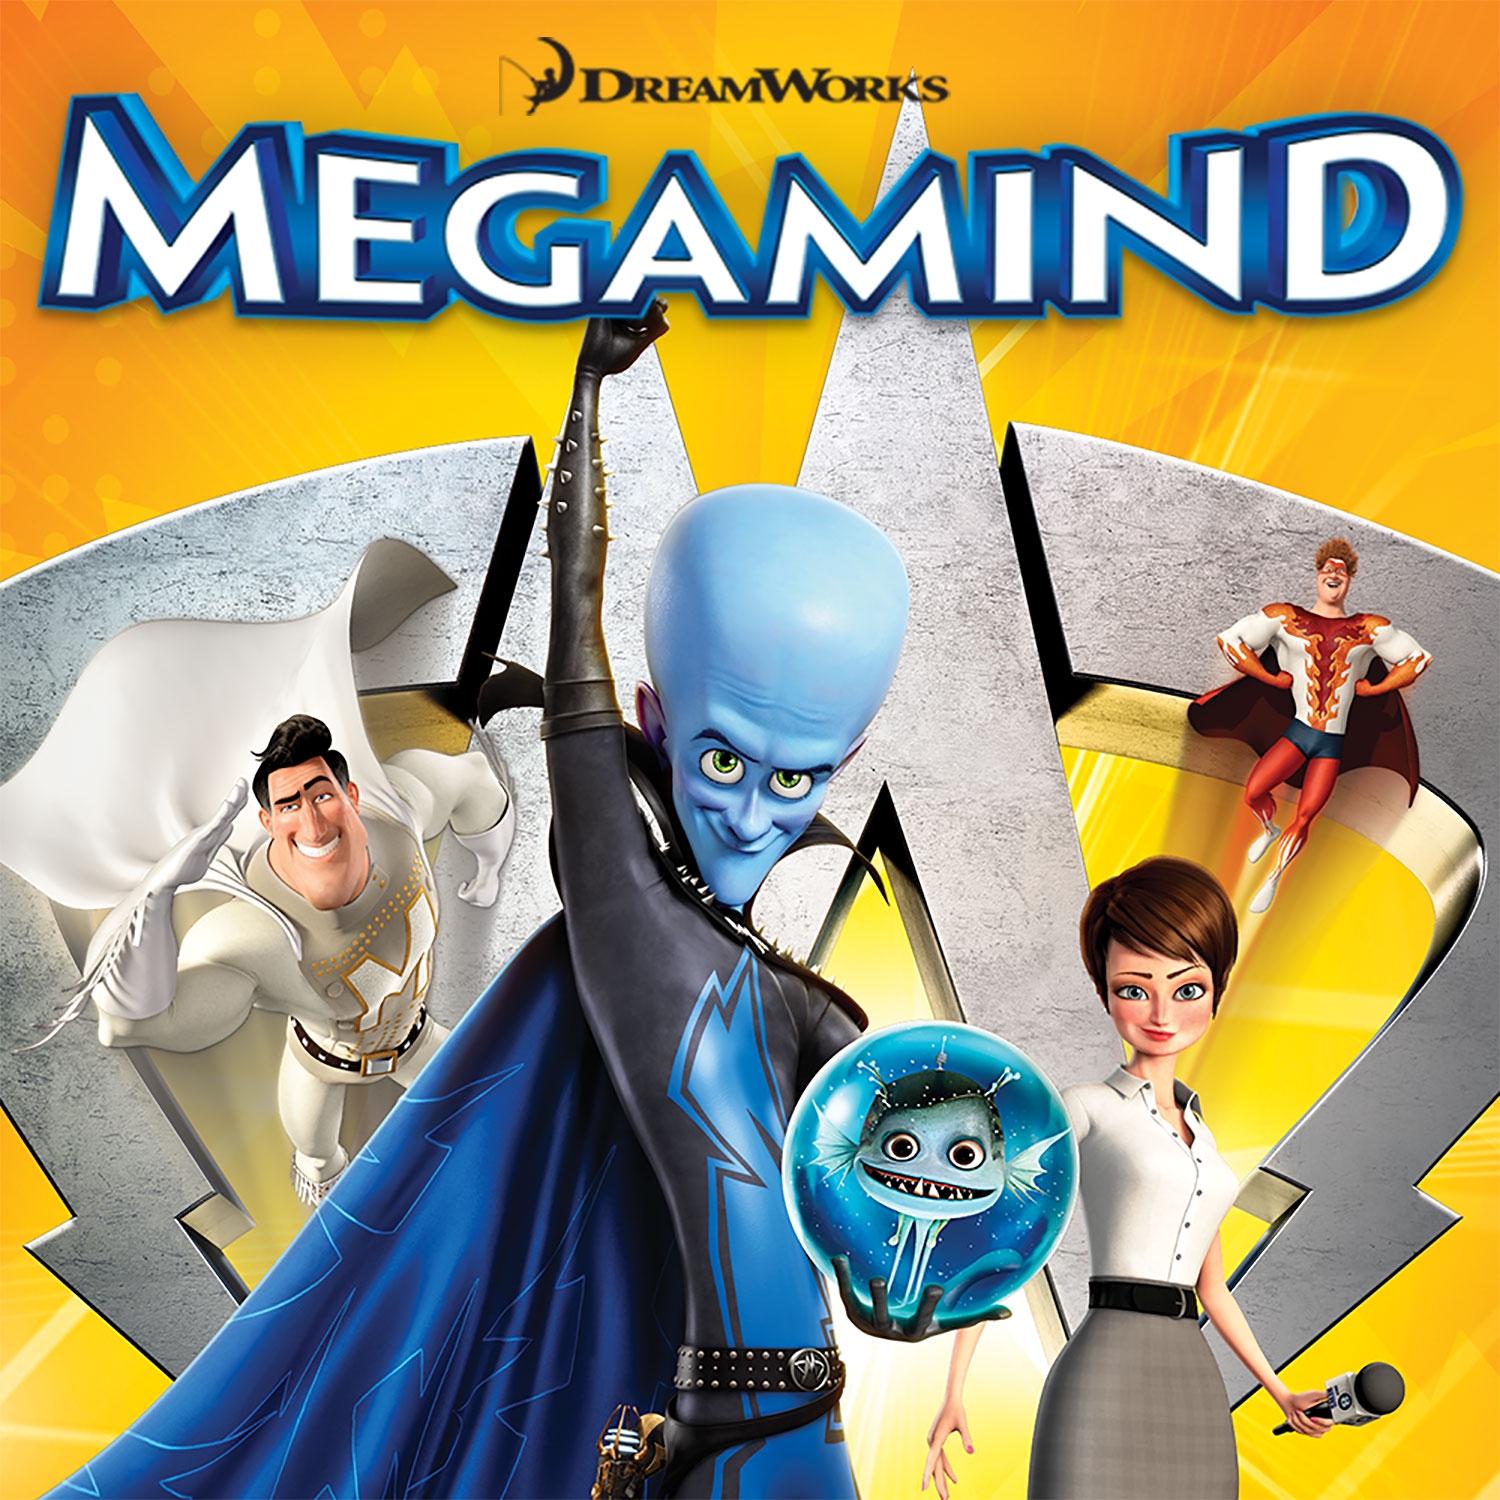 Watch Megamind